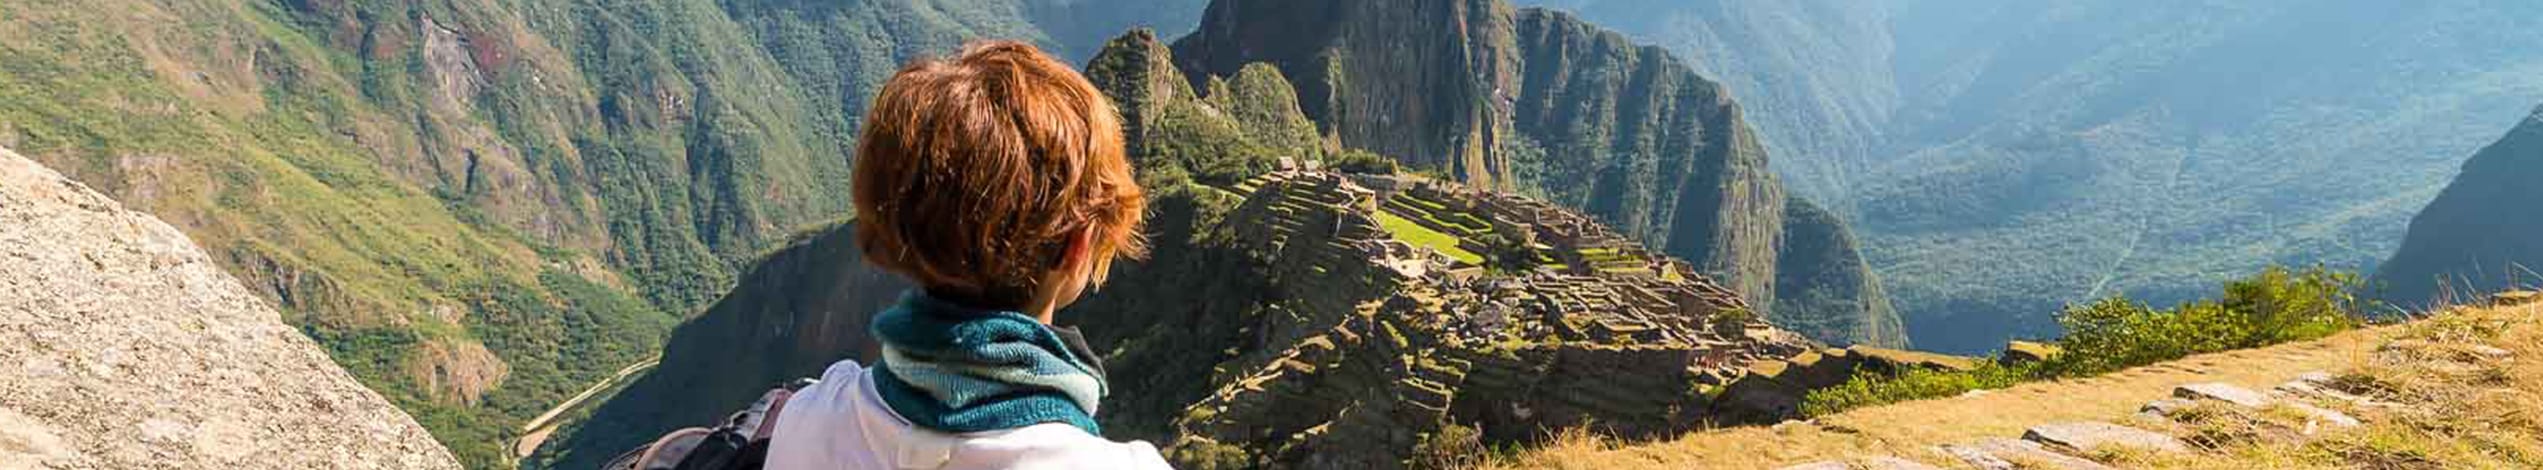 Vandring till Machu Picchu via Inkaleden